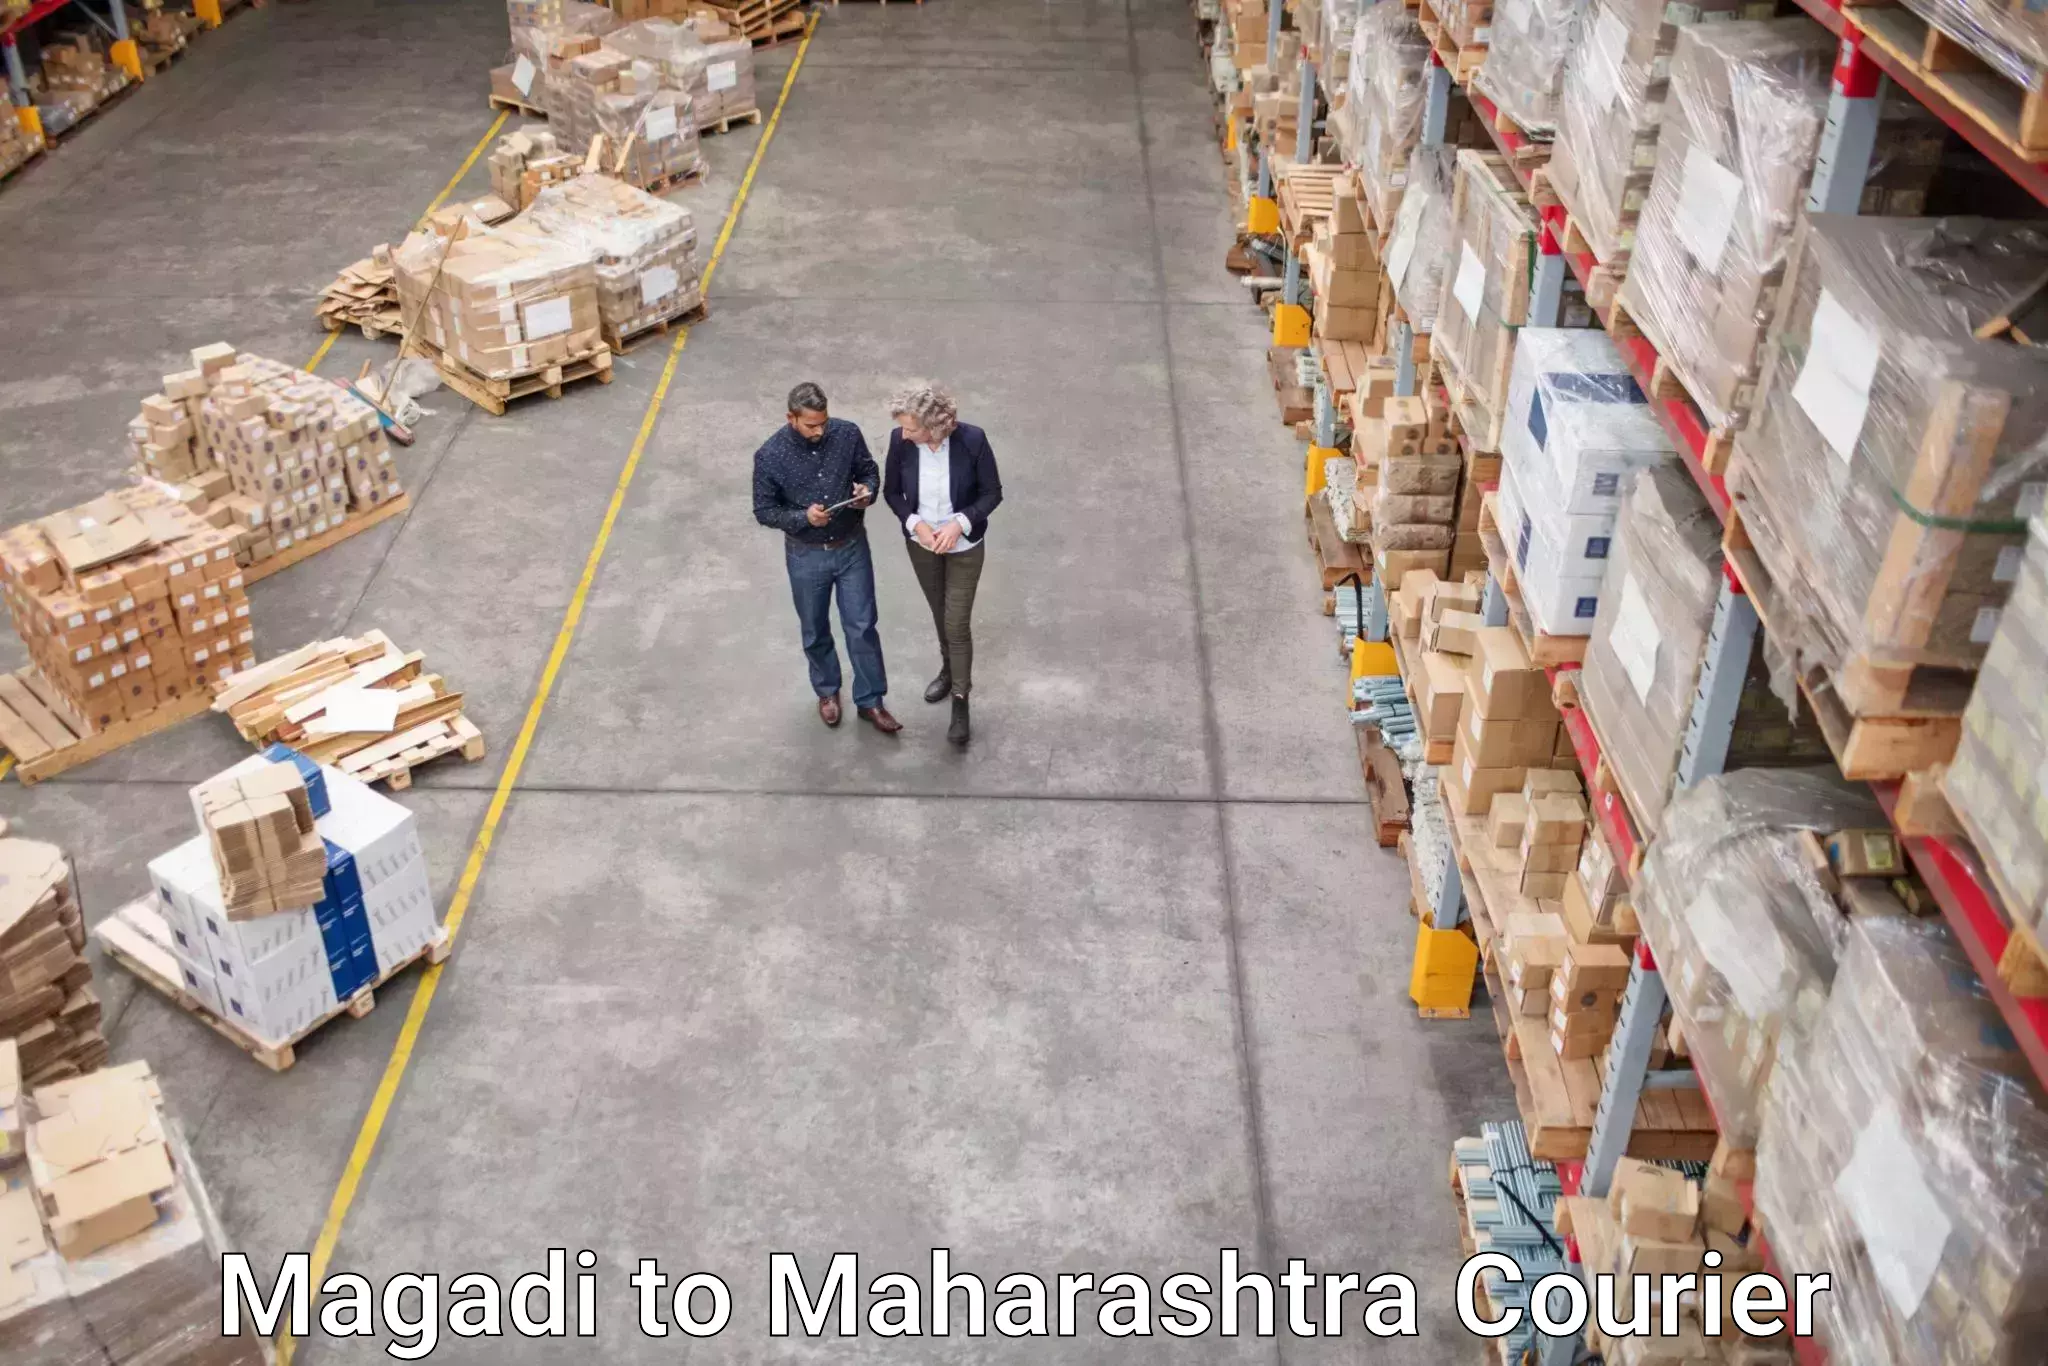 Round-the-clock parcel delivery Magadi to Maharashtra